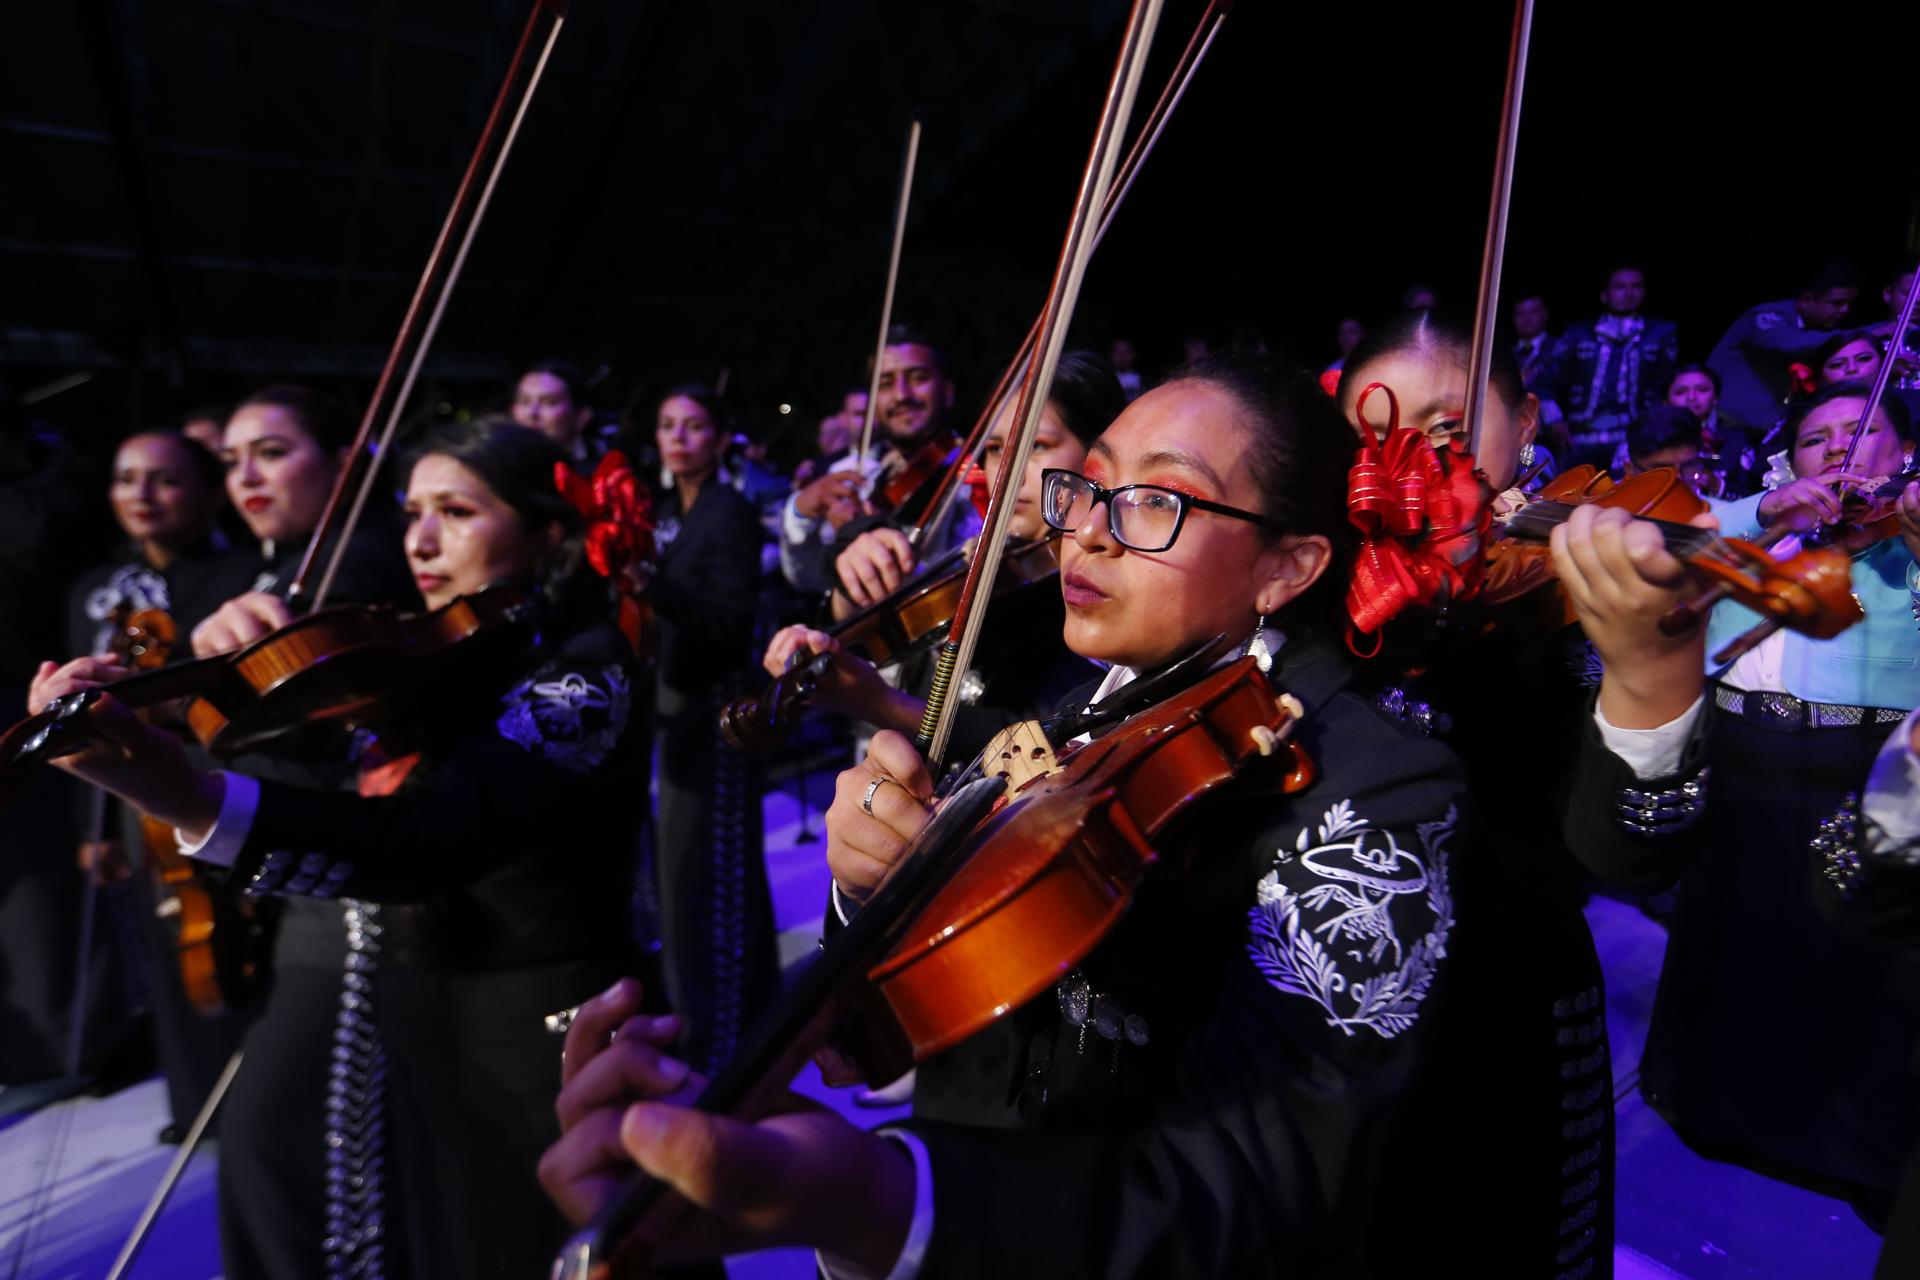 Un grupo de 200 mariachis interpretan canciones representativas del genero ranchero y bolero hoy durante el 30 Encuentro Internacional del Mariachi y la Charrería celebrado en el centro histórico de Guadalajara, Jalisco (México). EFE/ Francisco Guasco